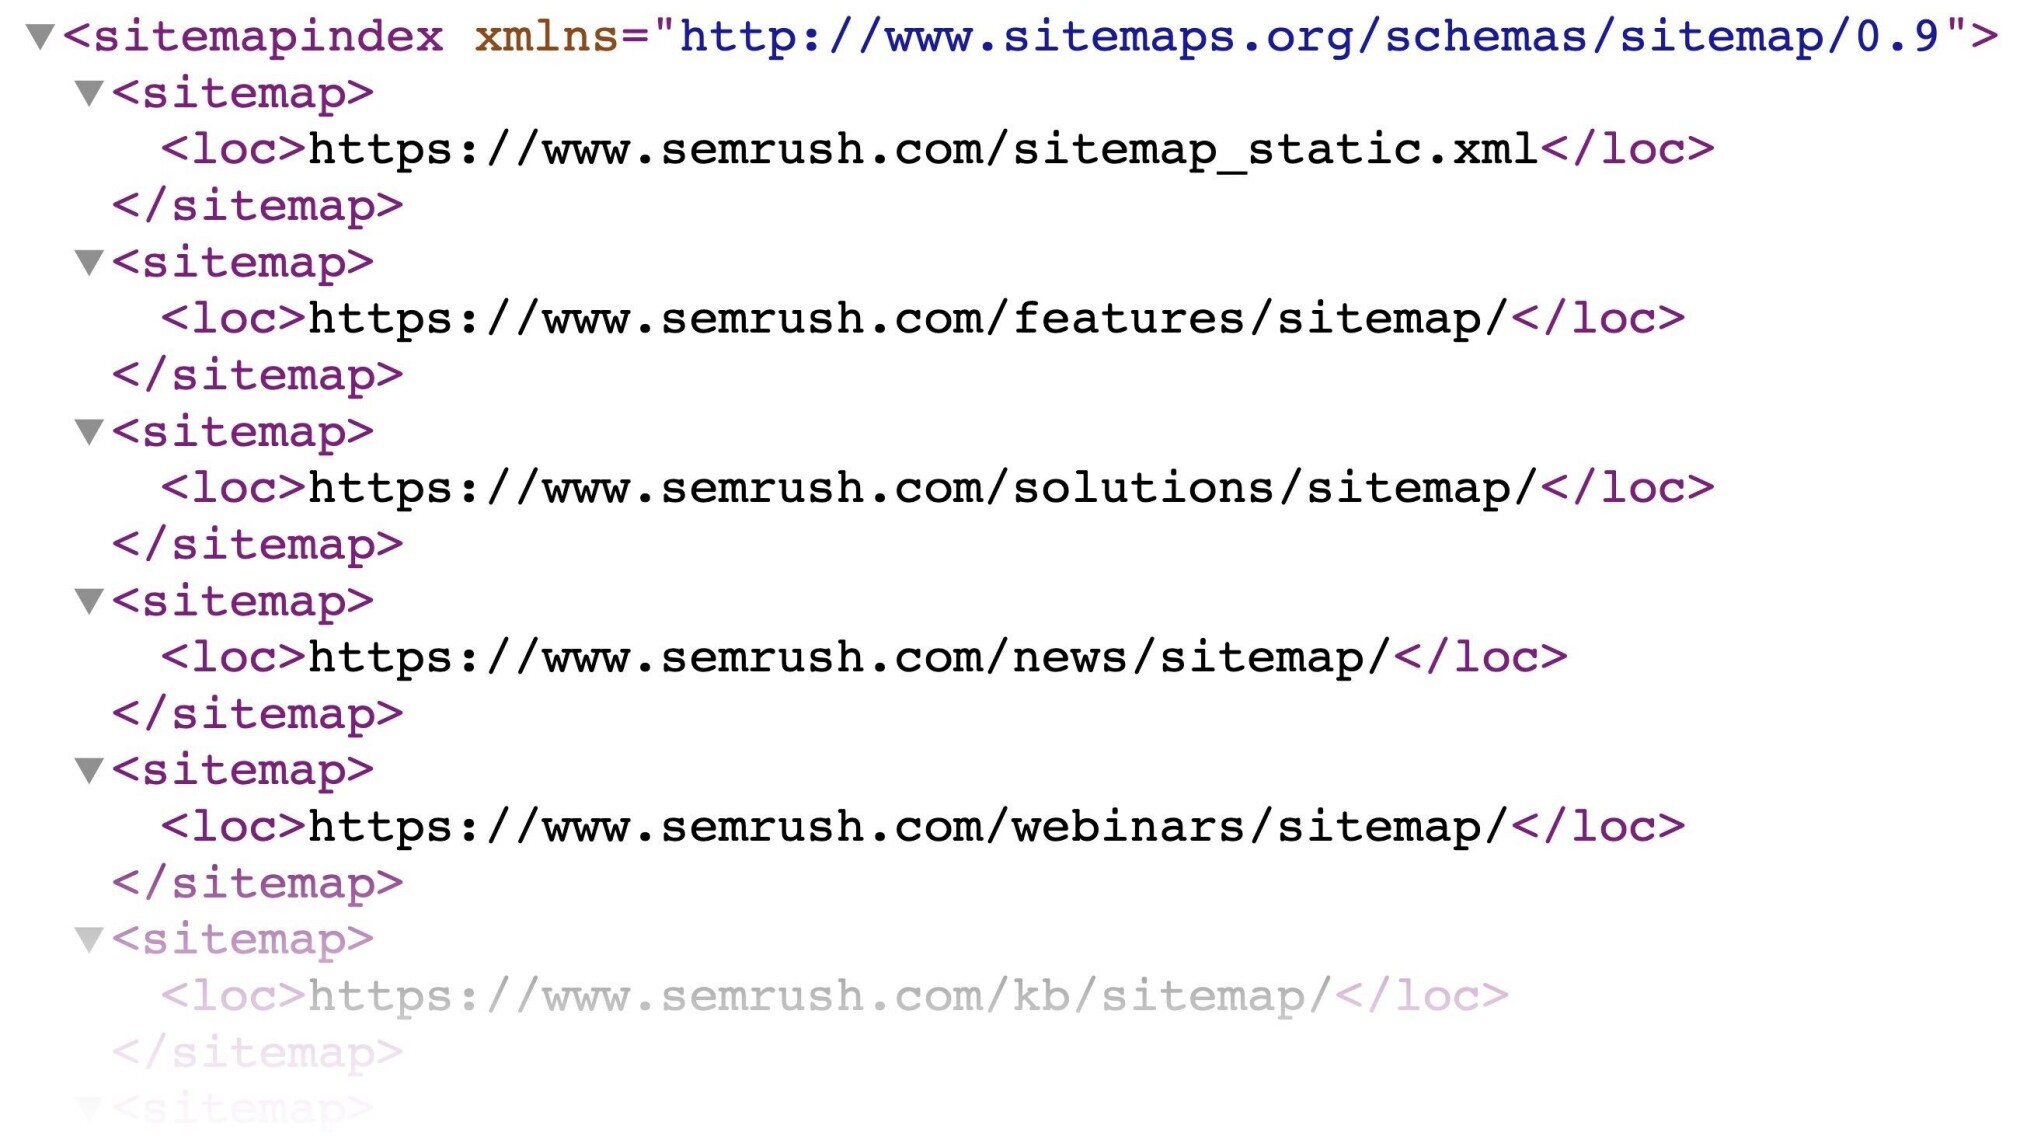 exemplo de sitemap xml